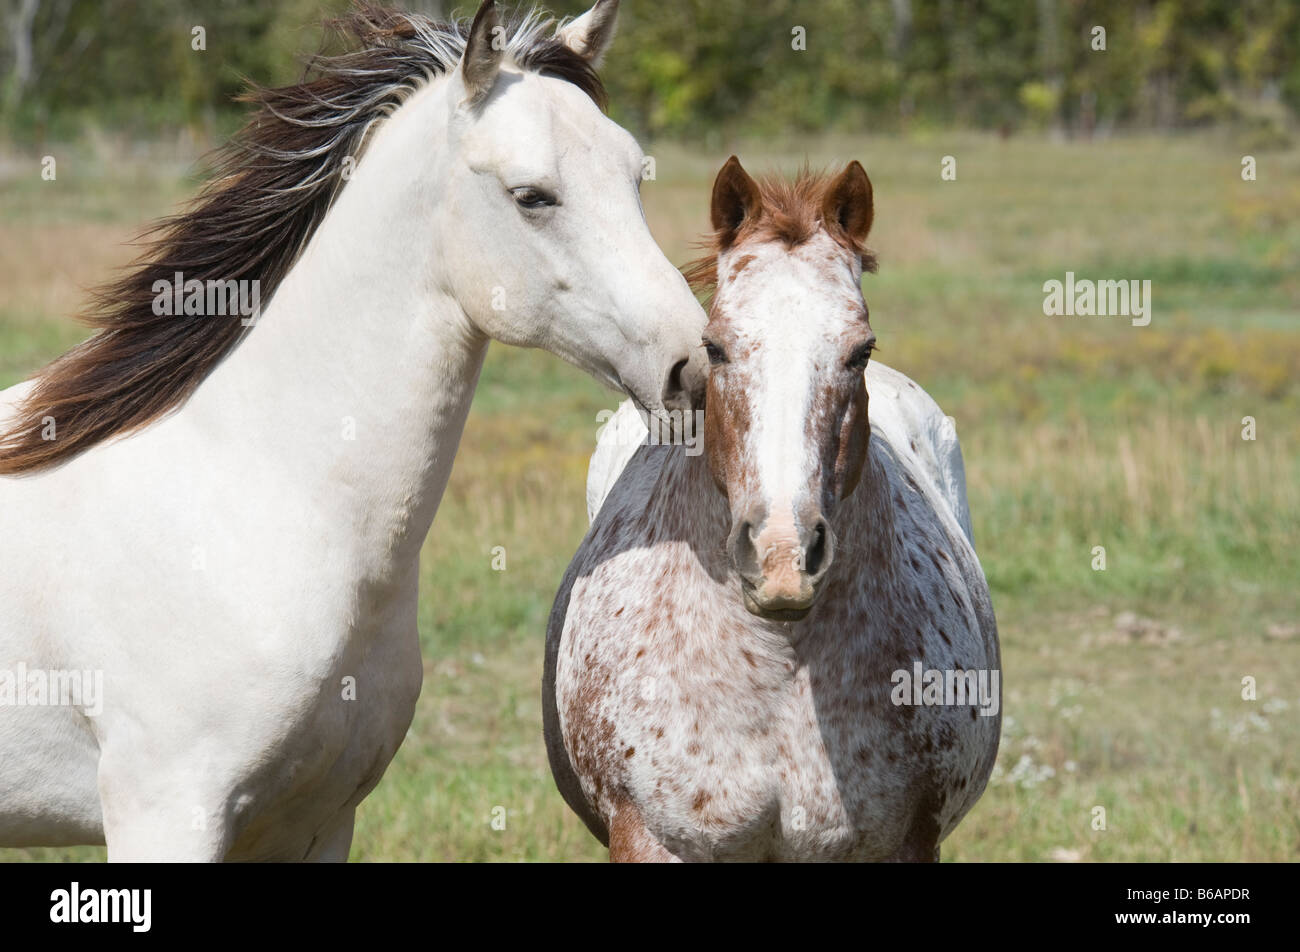 Cavallo da passeggio immagini e fotografie stock ad alta risoluzione - Alamy